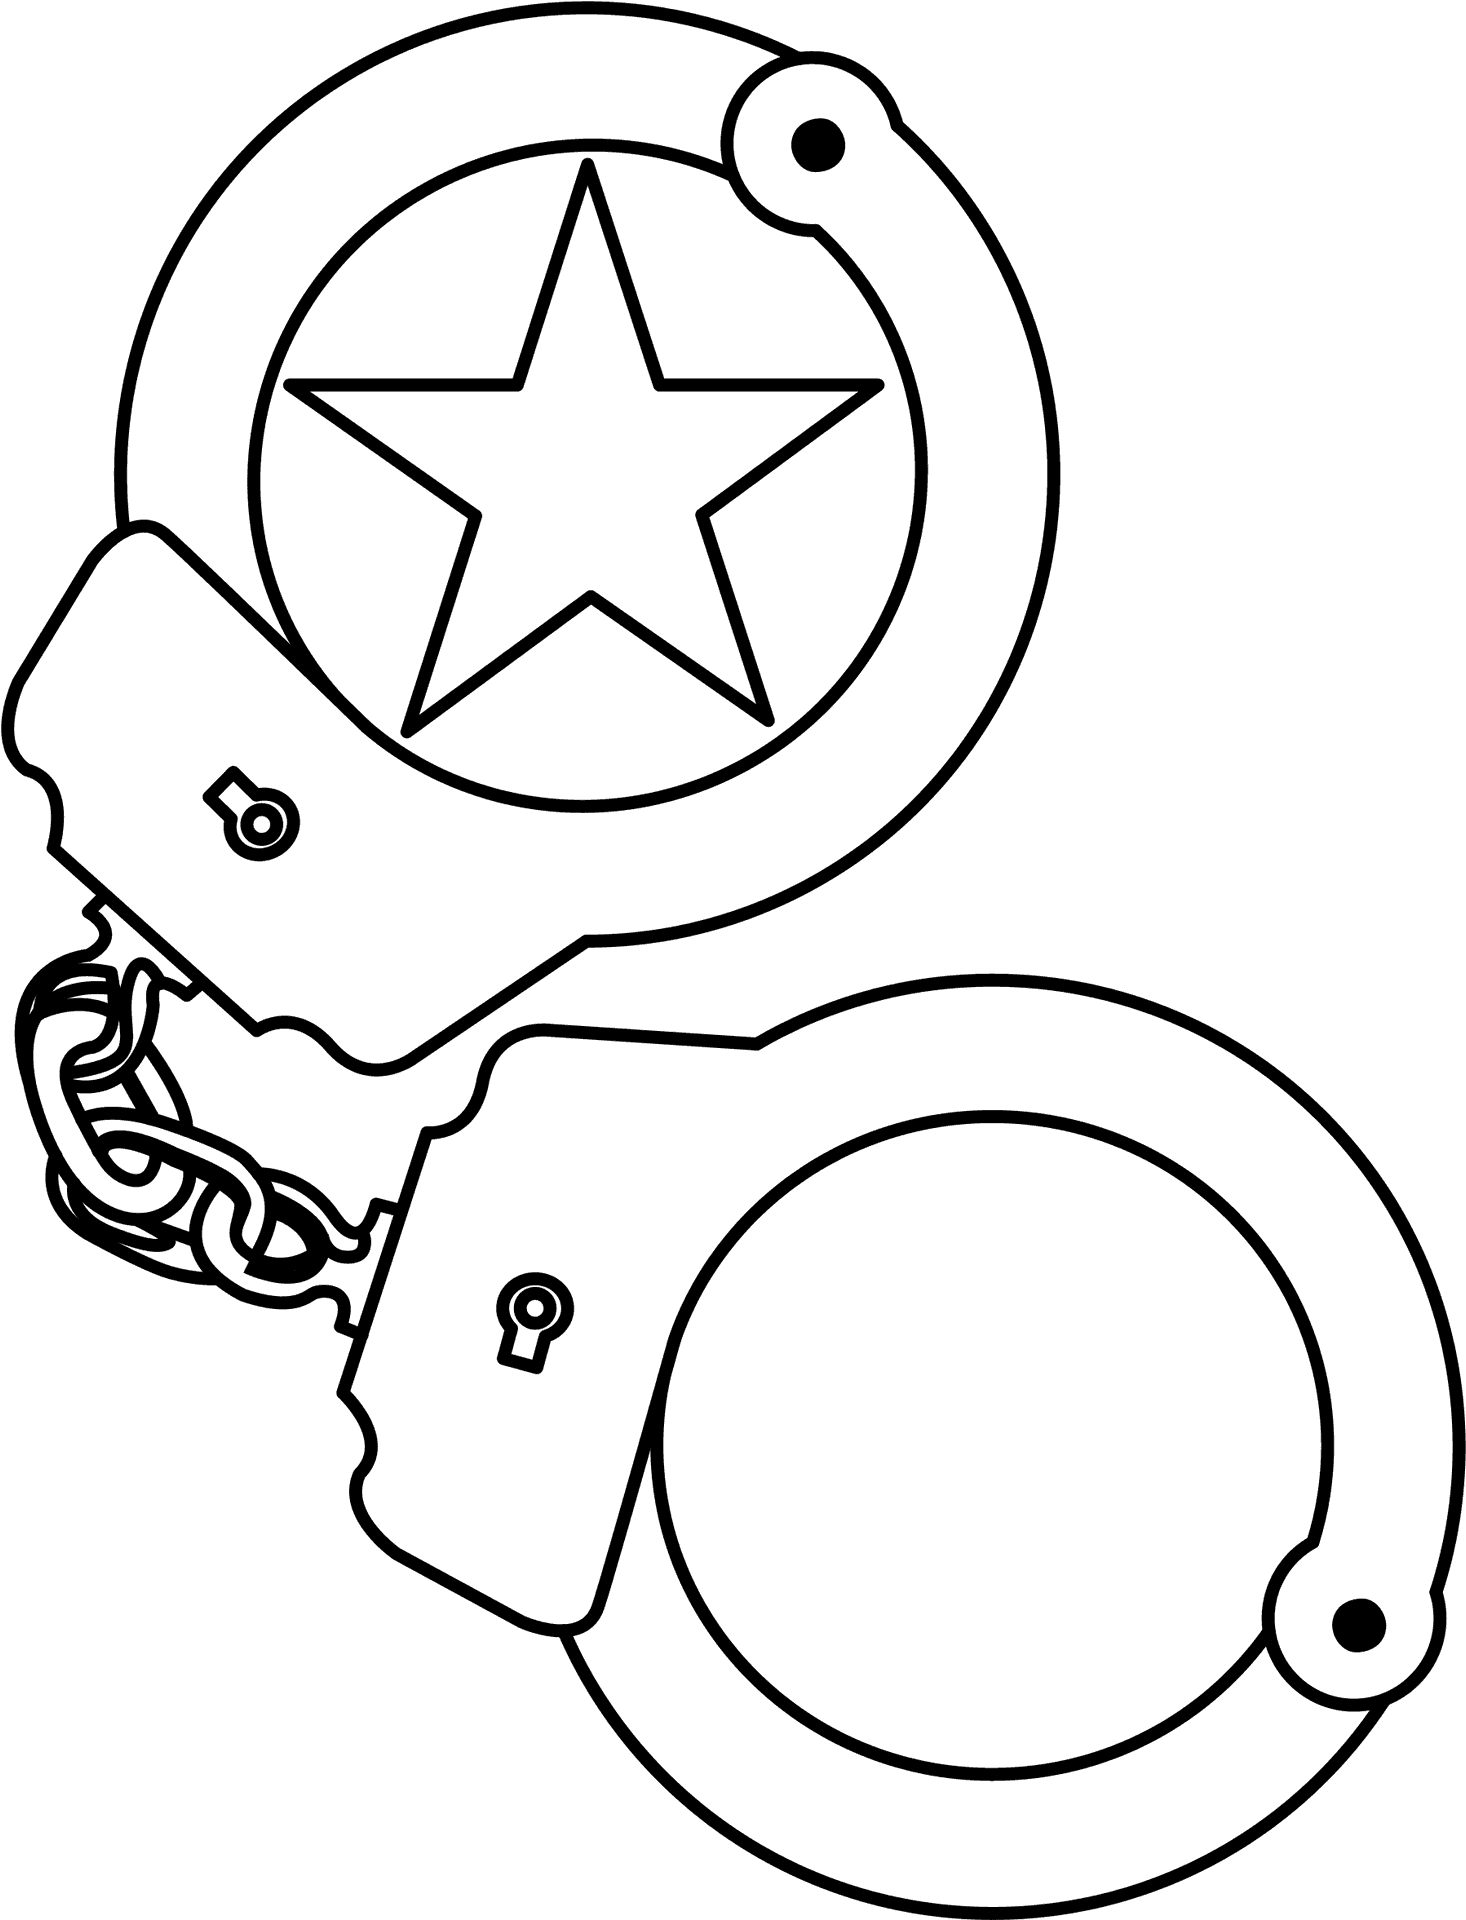 Star Embellished Handcuffs Illustration PNG image